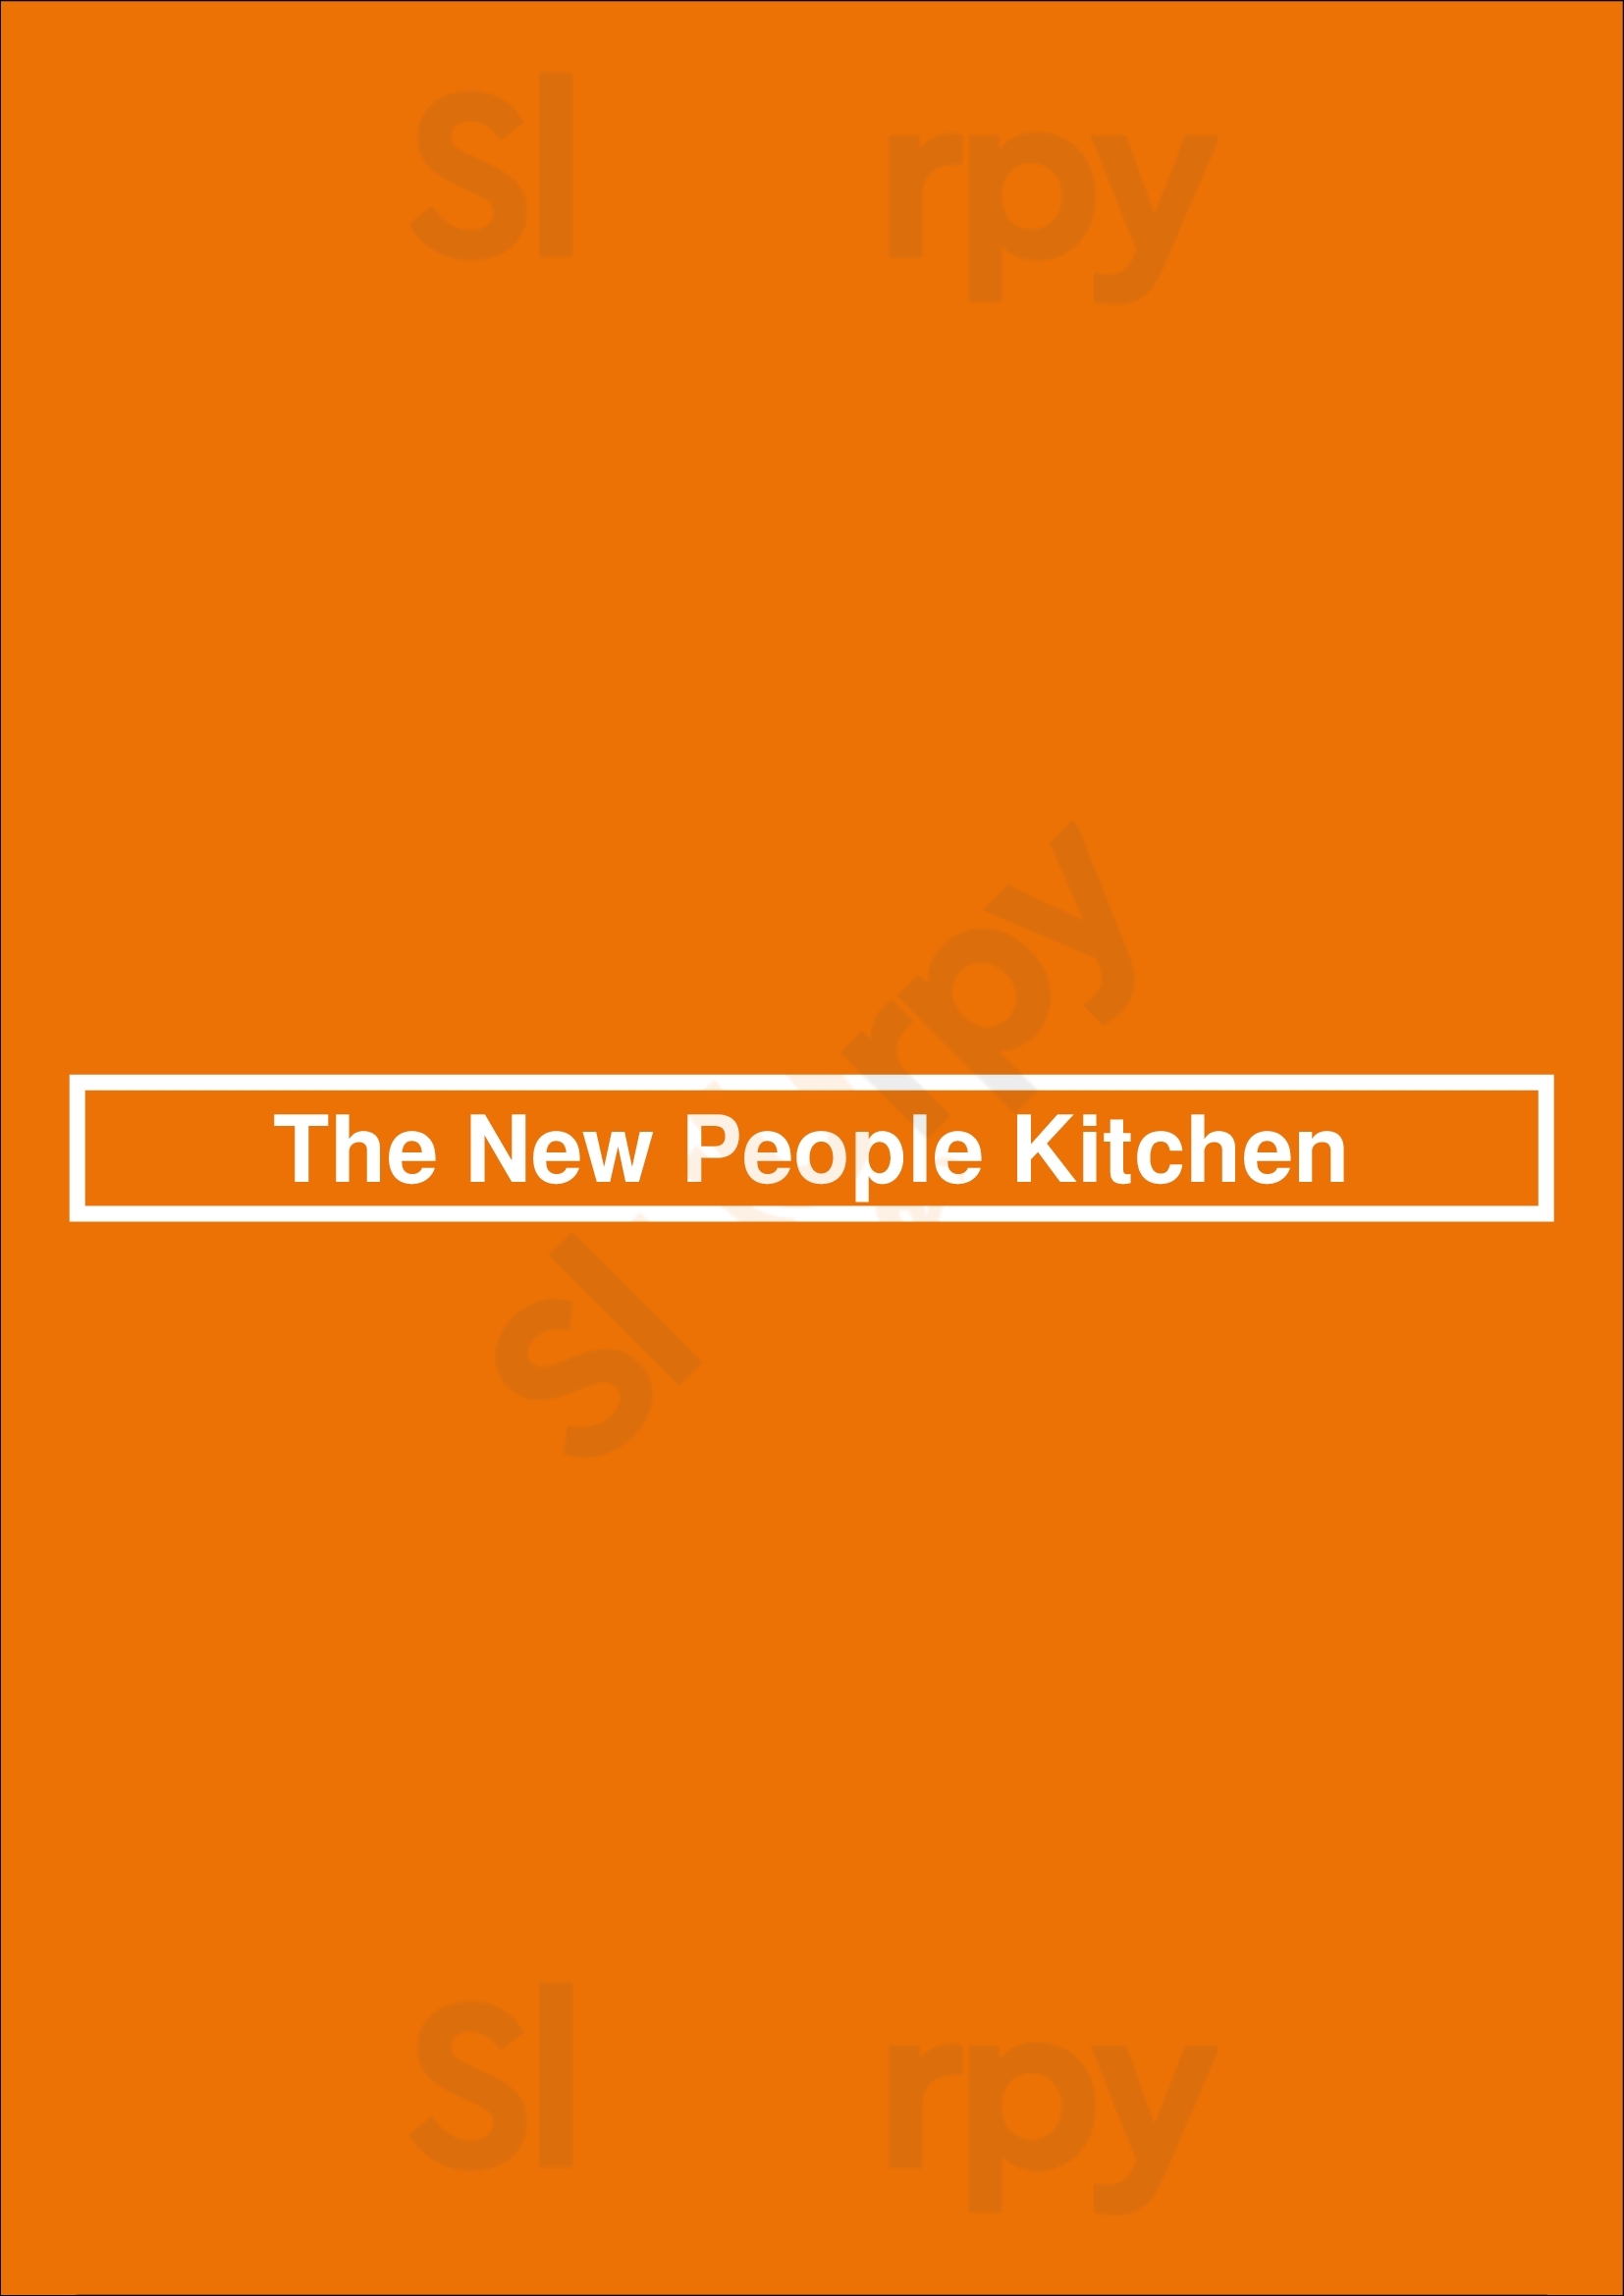 The New People Kitchen Brooklyn Menu - 1